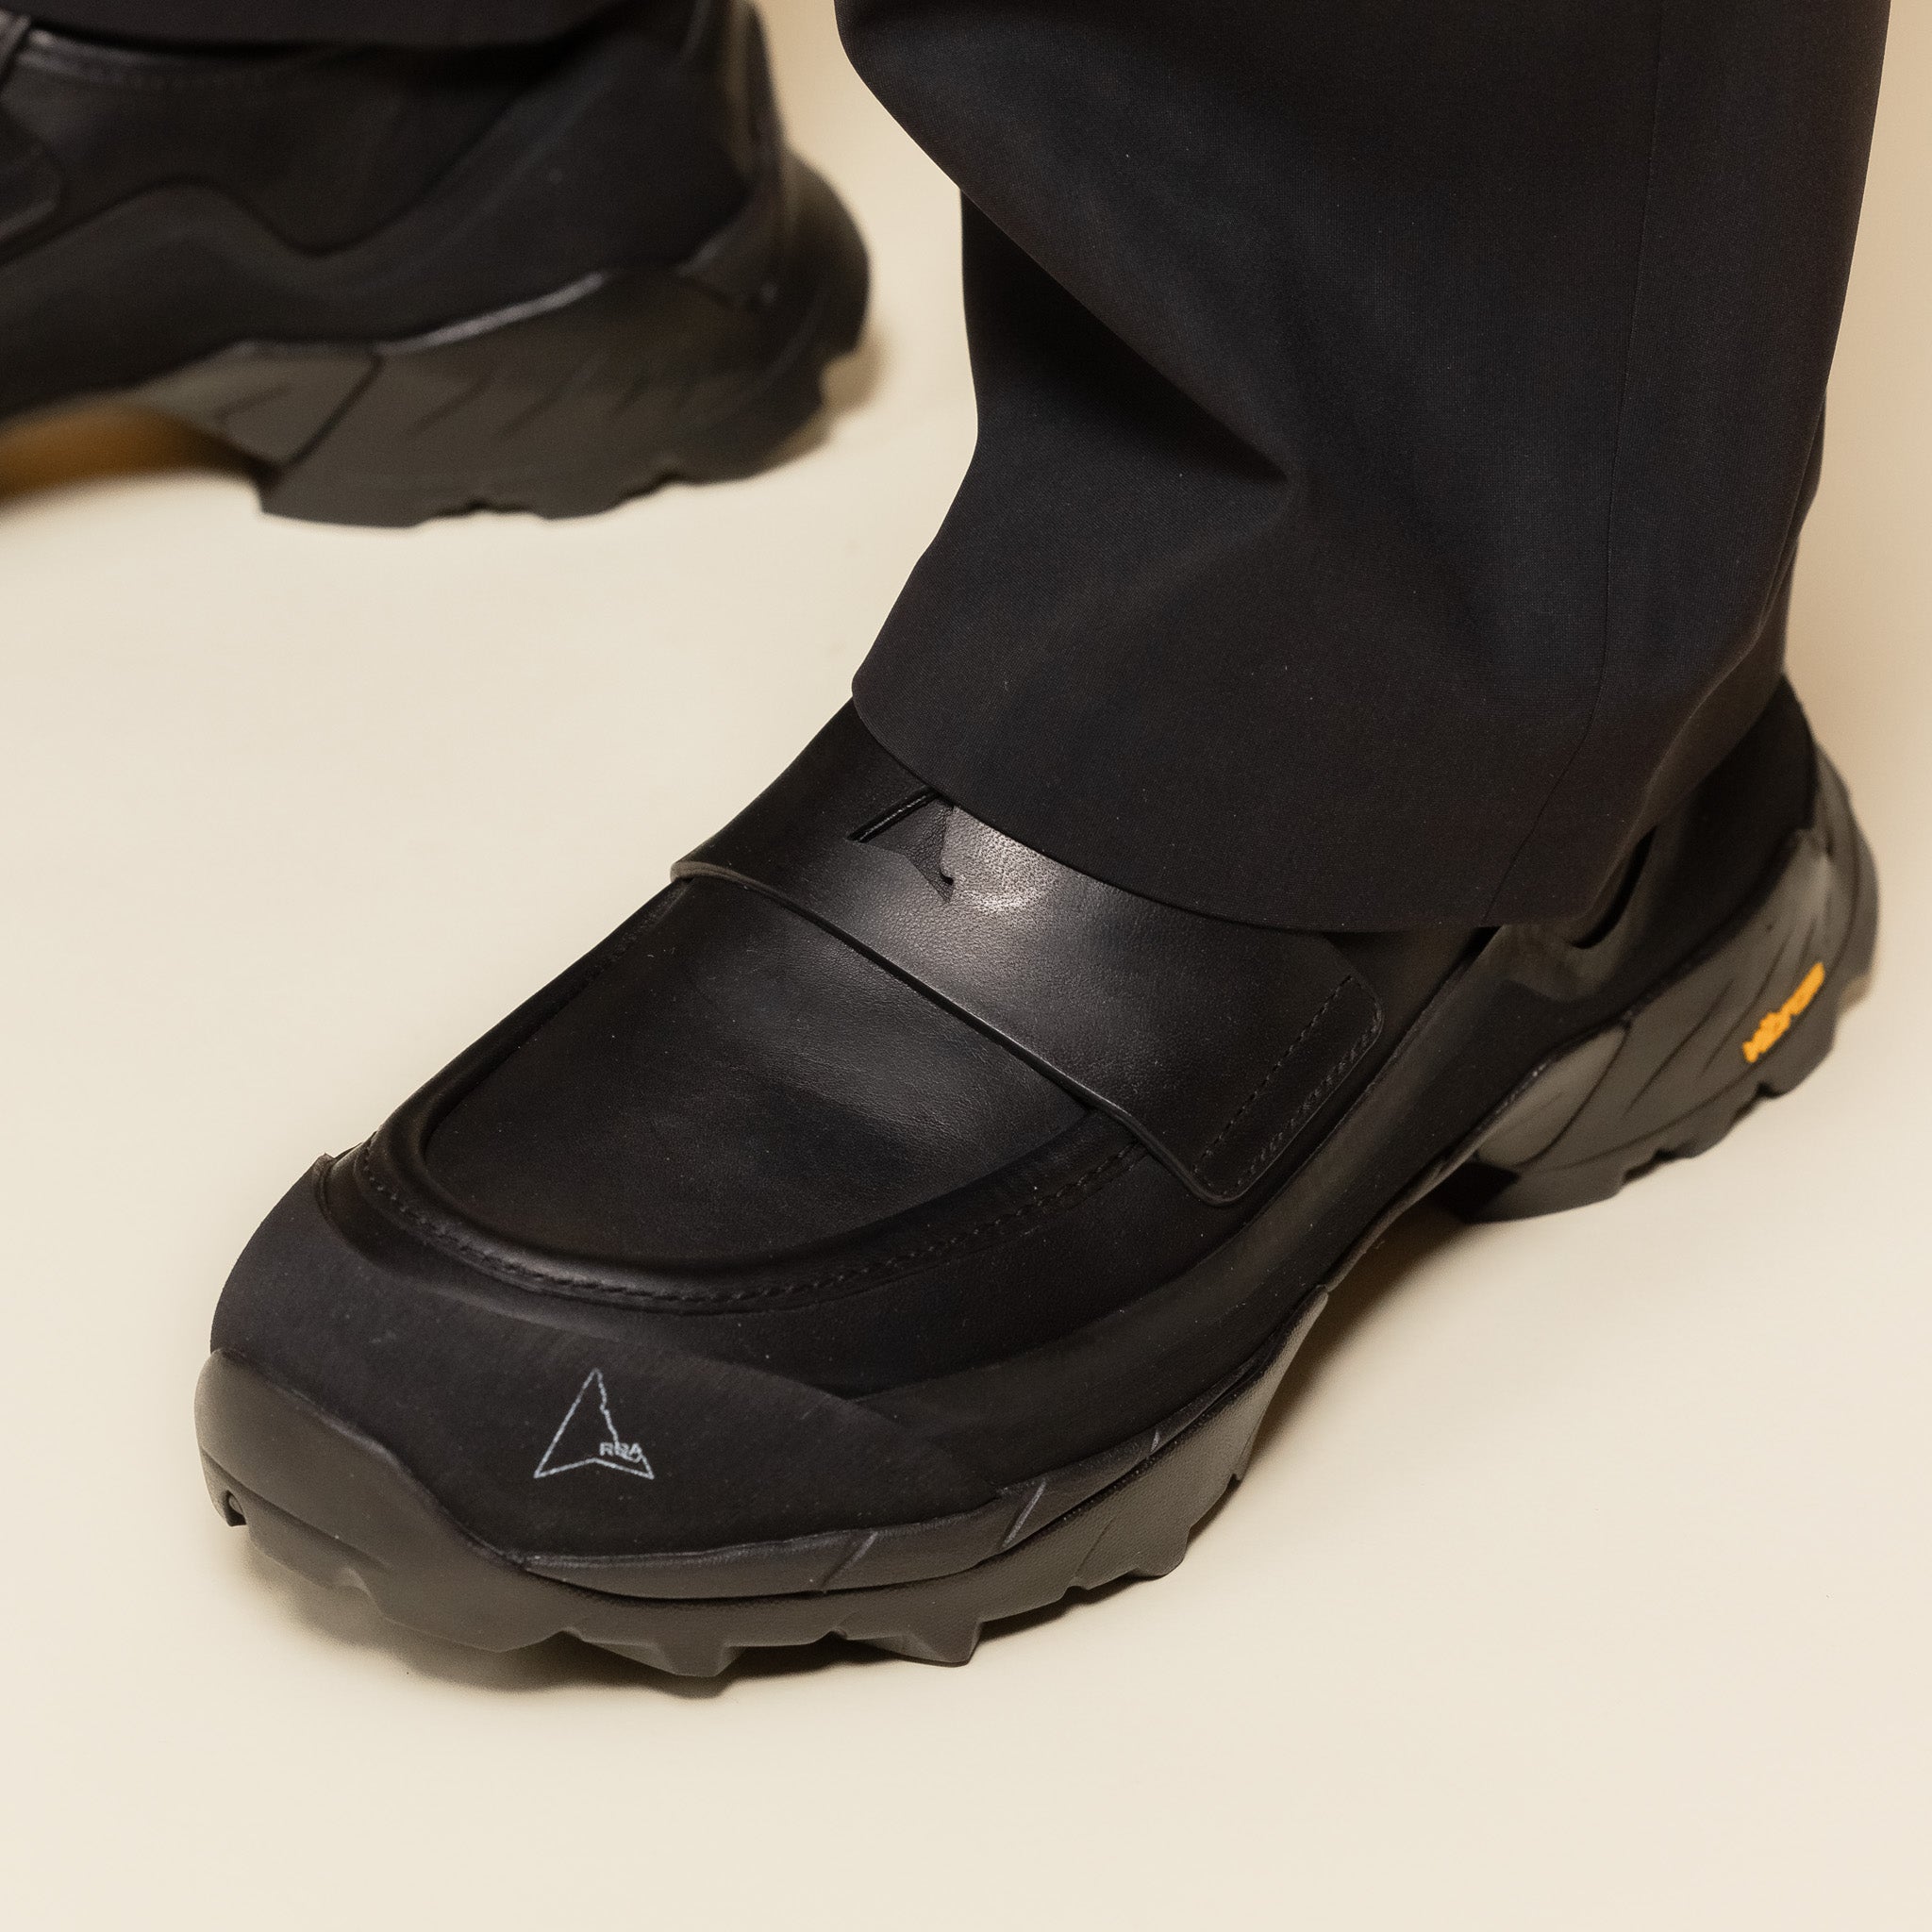 LOLE10-001 Roa Hiking - Loafer Shoe - Black "roa loafer" "roa shoes" "roa footwear"